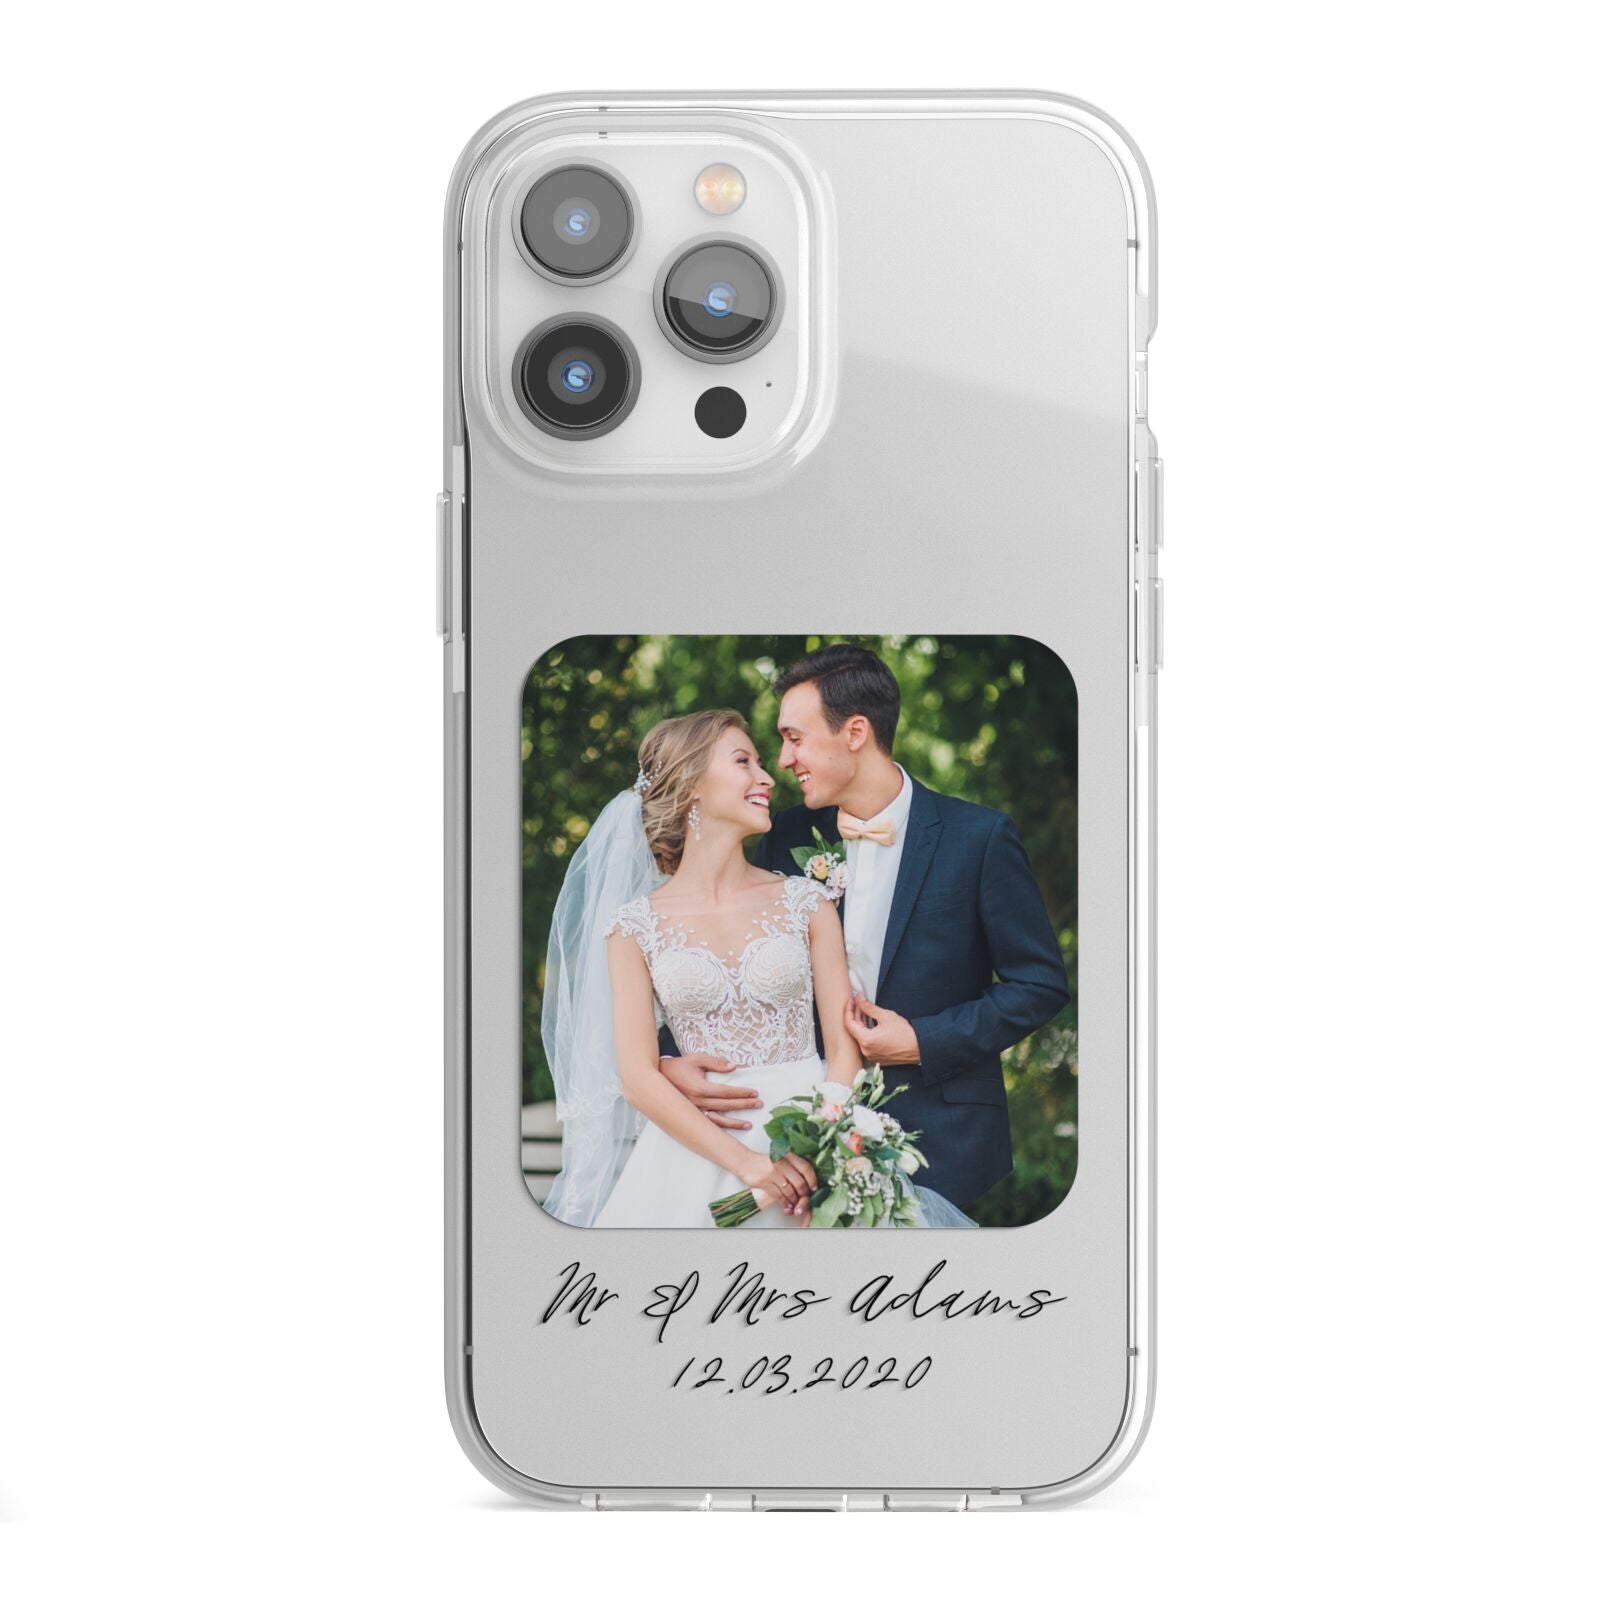 Wedding Photo Upload Keepsake with Text iPhone 13 Pro Max TPU Impact Case with White Edges